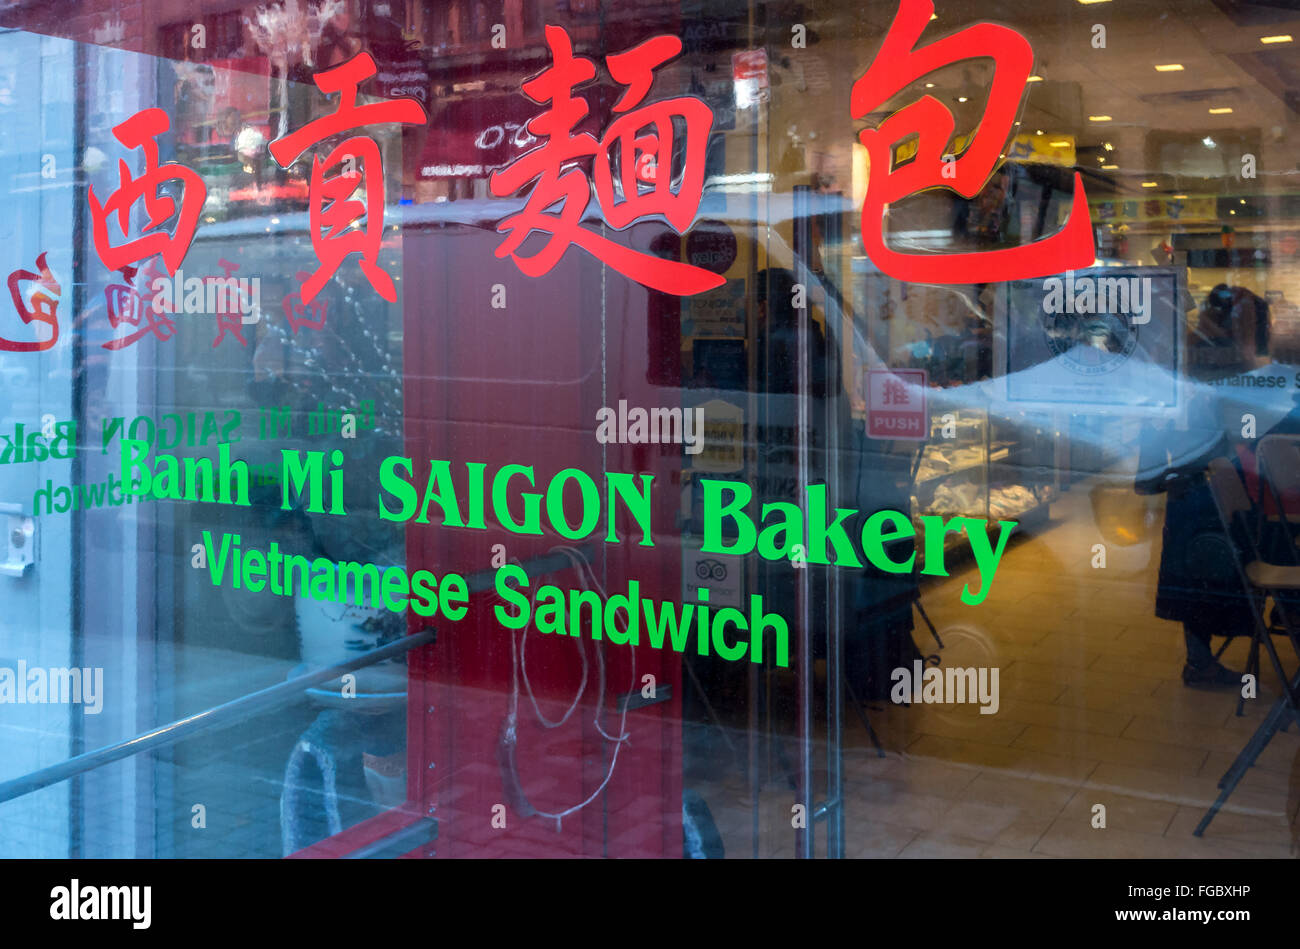 Banh Mi Vietnamien Saigon Bakery sandwich shop Grand Rue dans la Petite Italie de New York City Banque D'Images